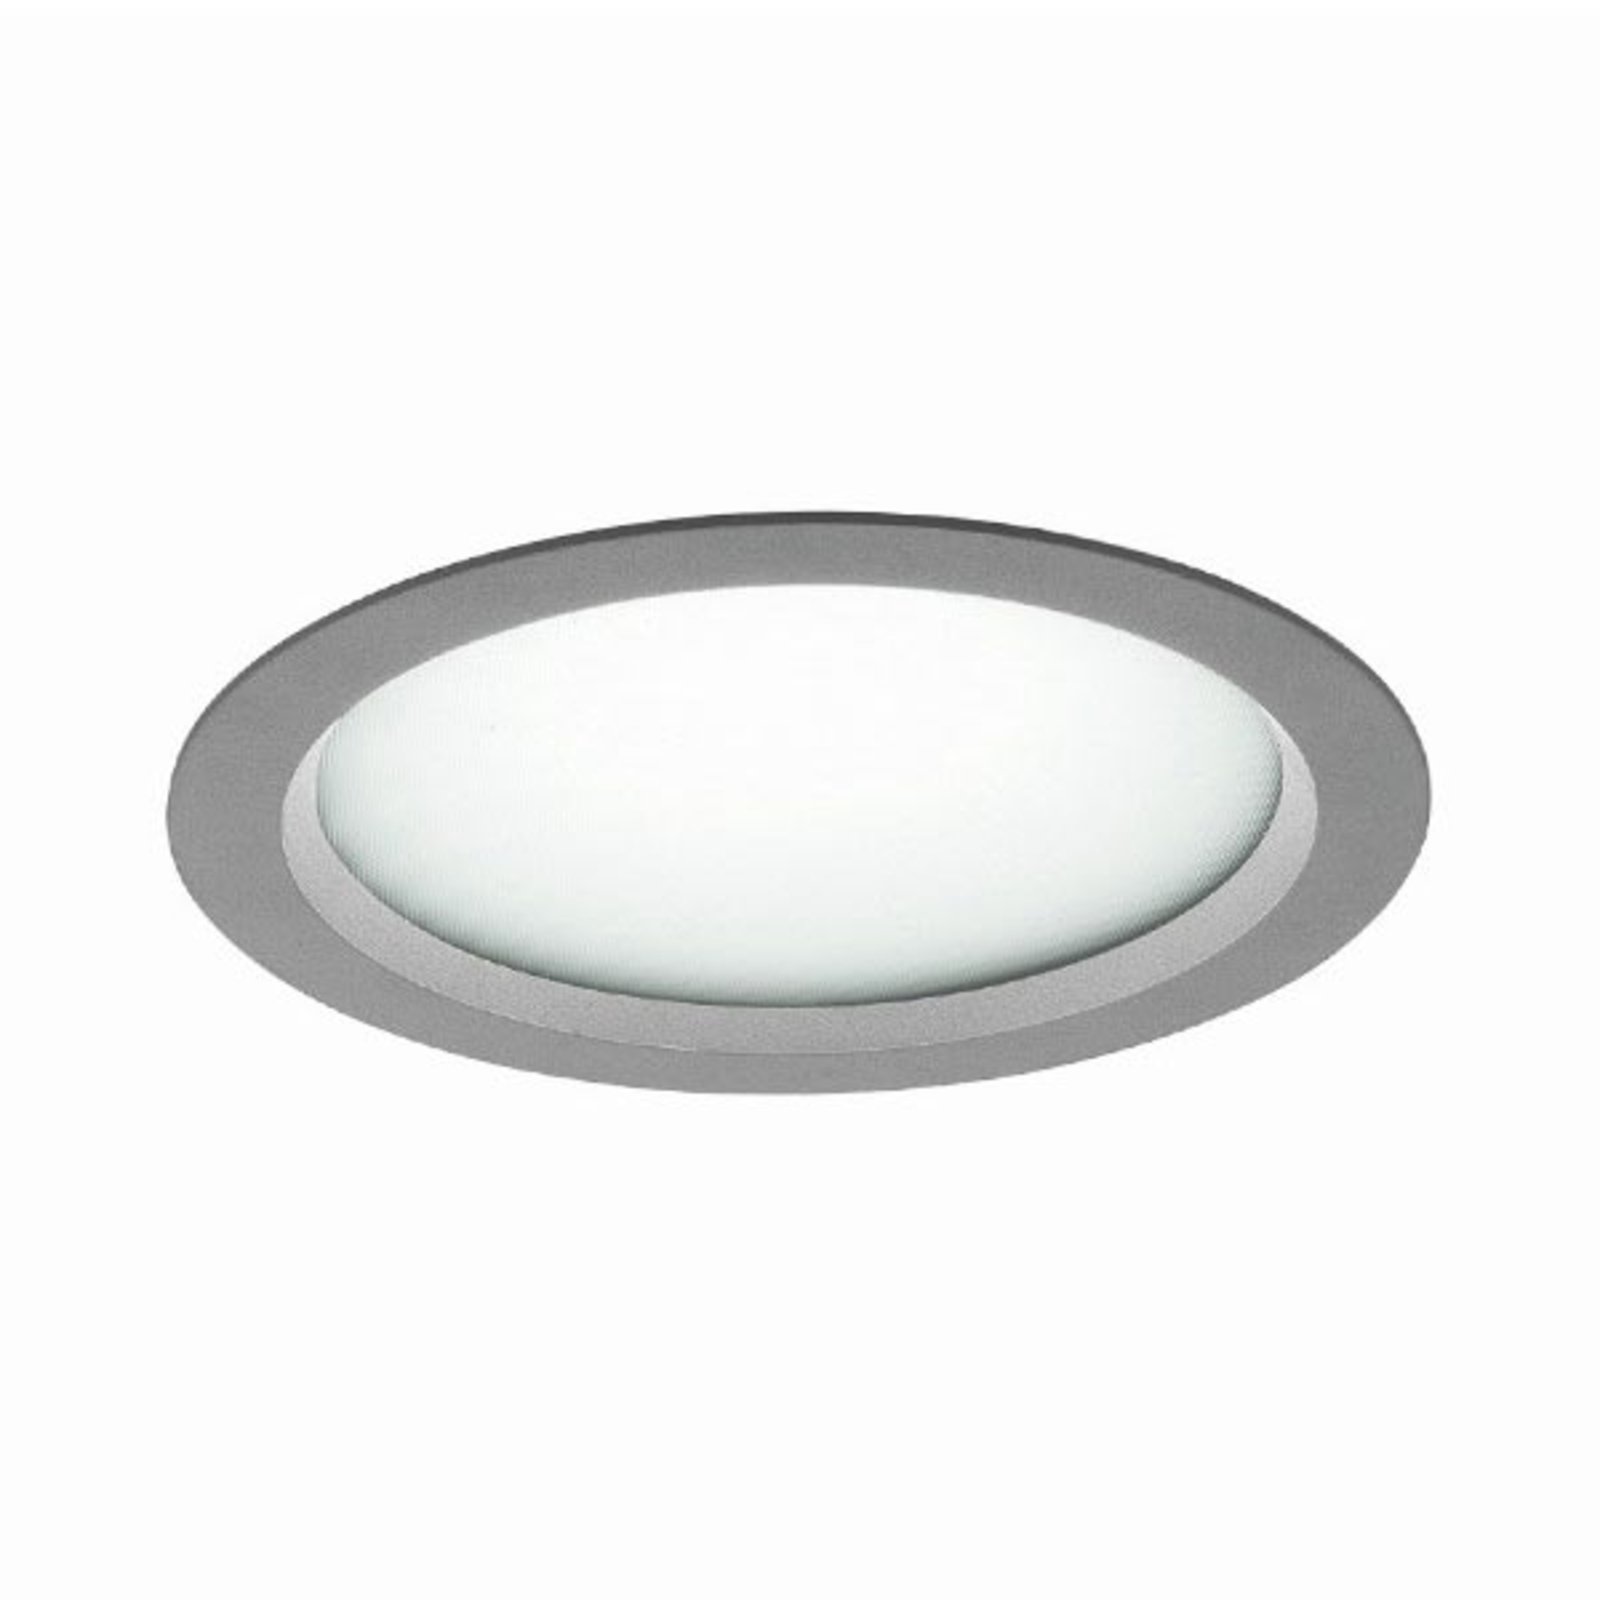 Mikroprismatické LED vstavané svetlo Vale-Tu Flat Large